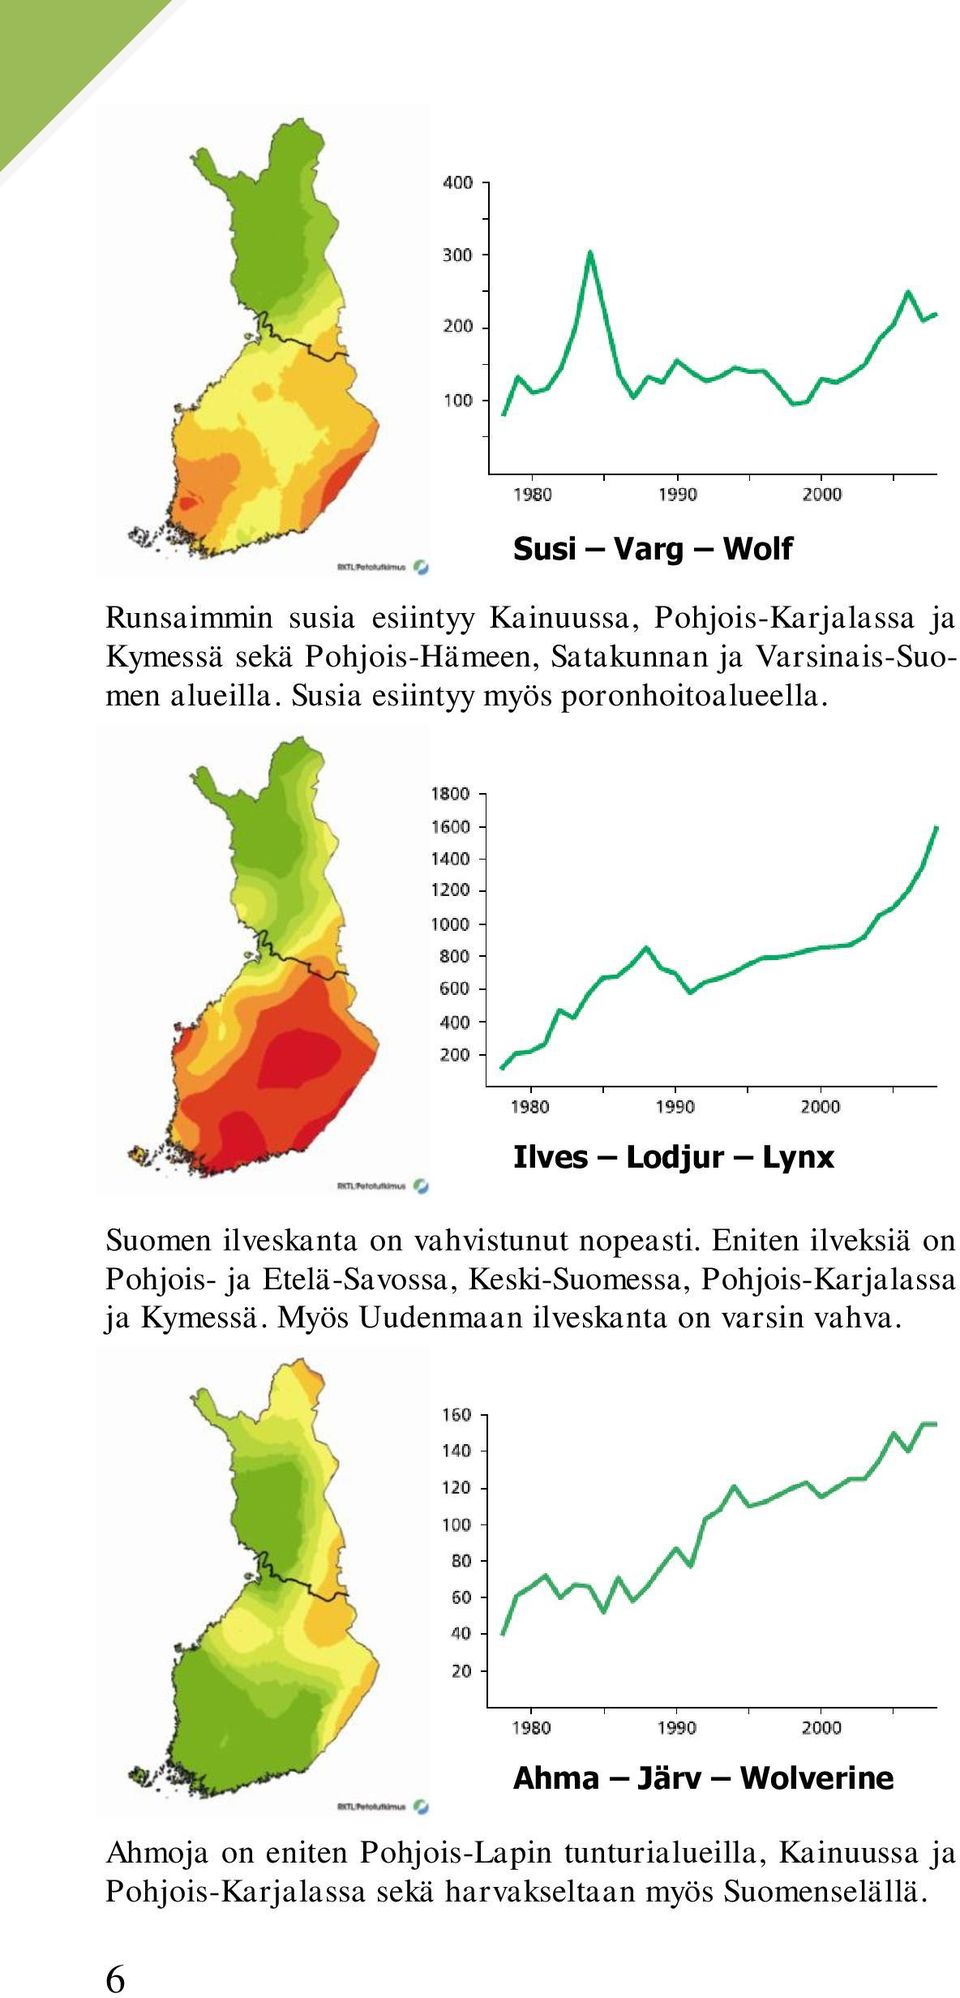 Eniten ilveksiä on Pohjois- ja Etelä-Savossa, Keski-Suomessa, Pohjois-Karjalassa ja Kymessä.